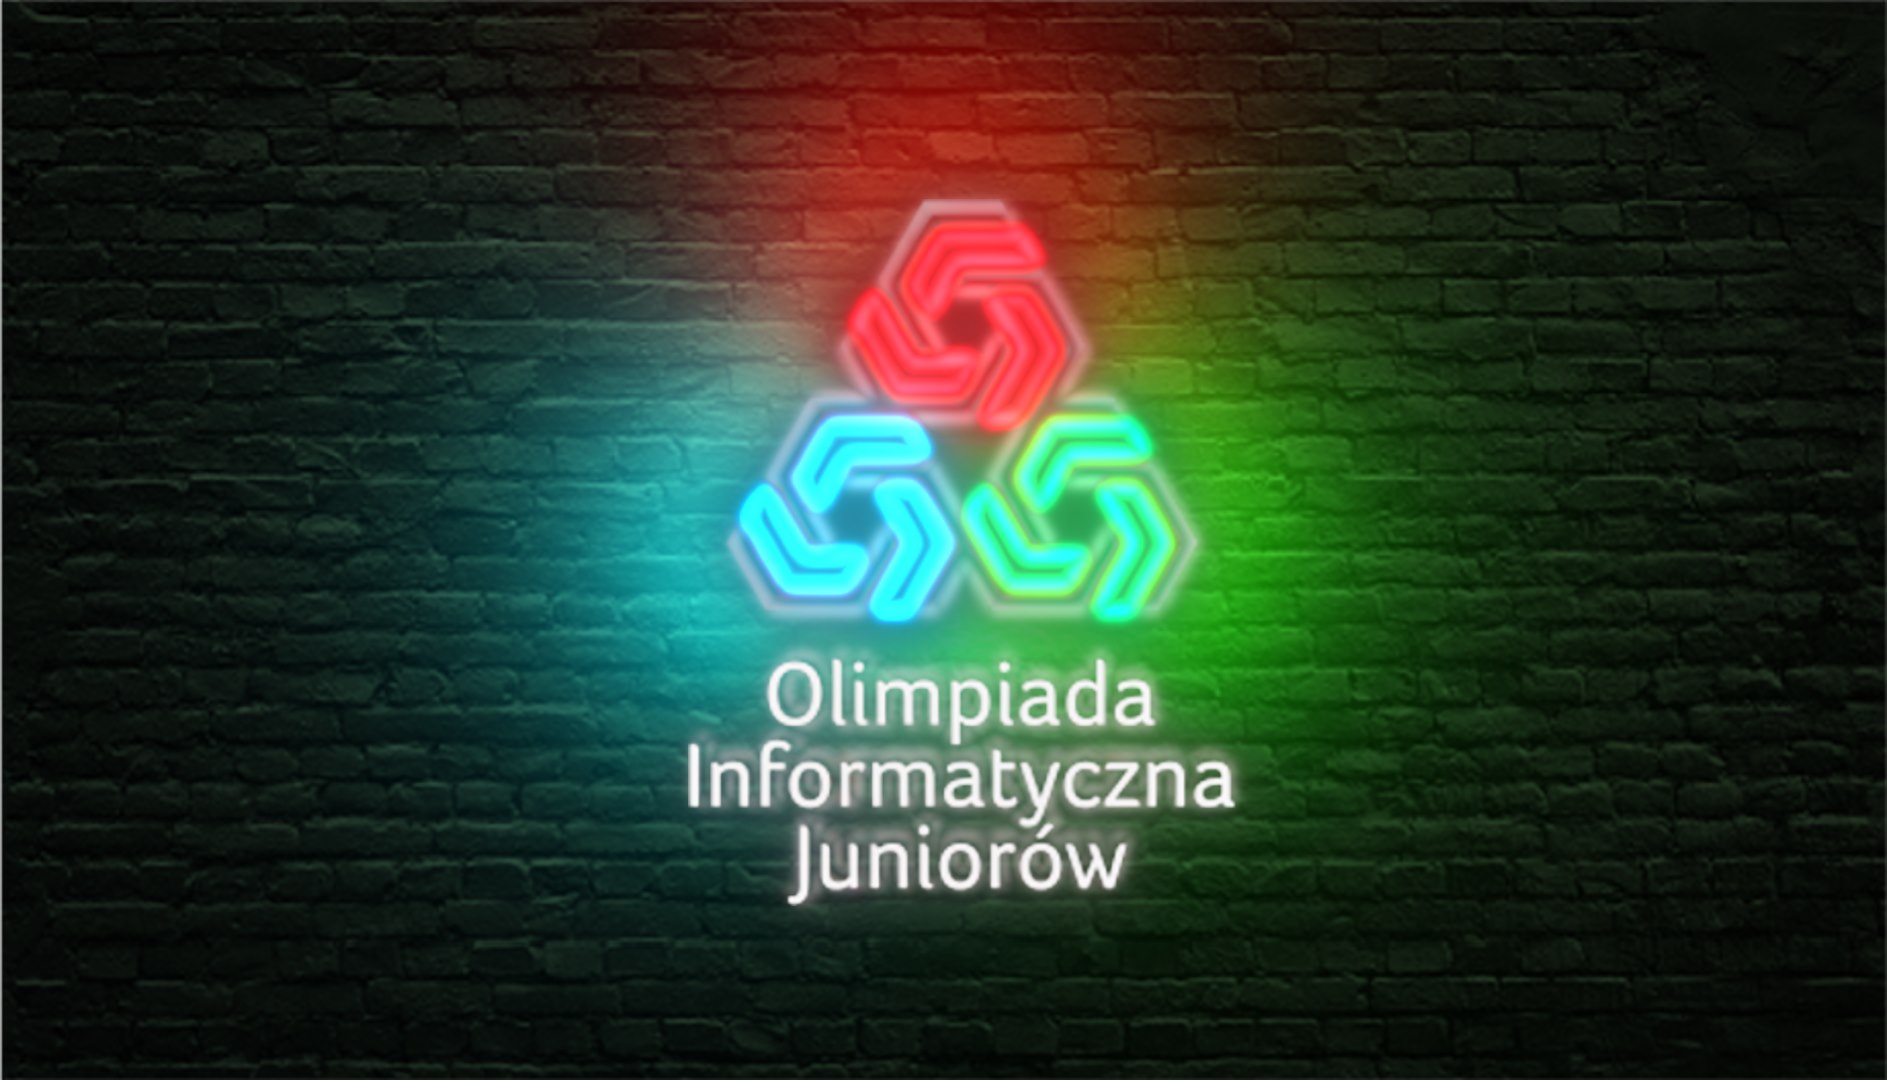 Olimpiada Informatyczna Juniorów 2020